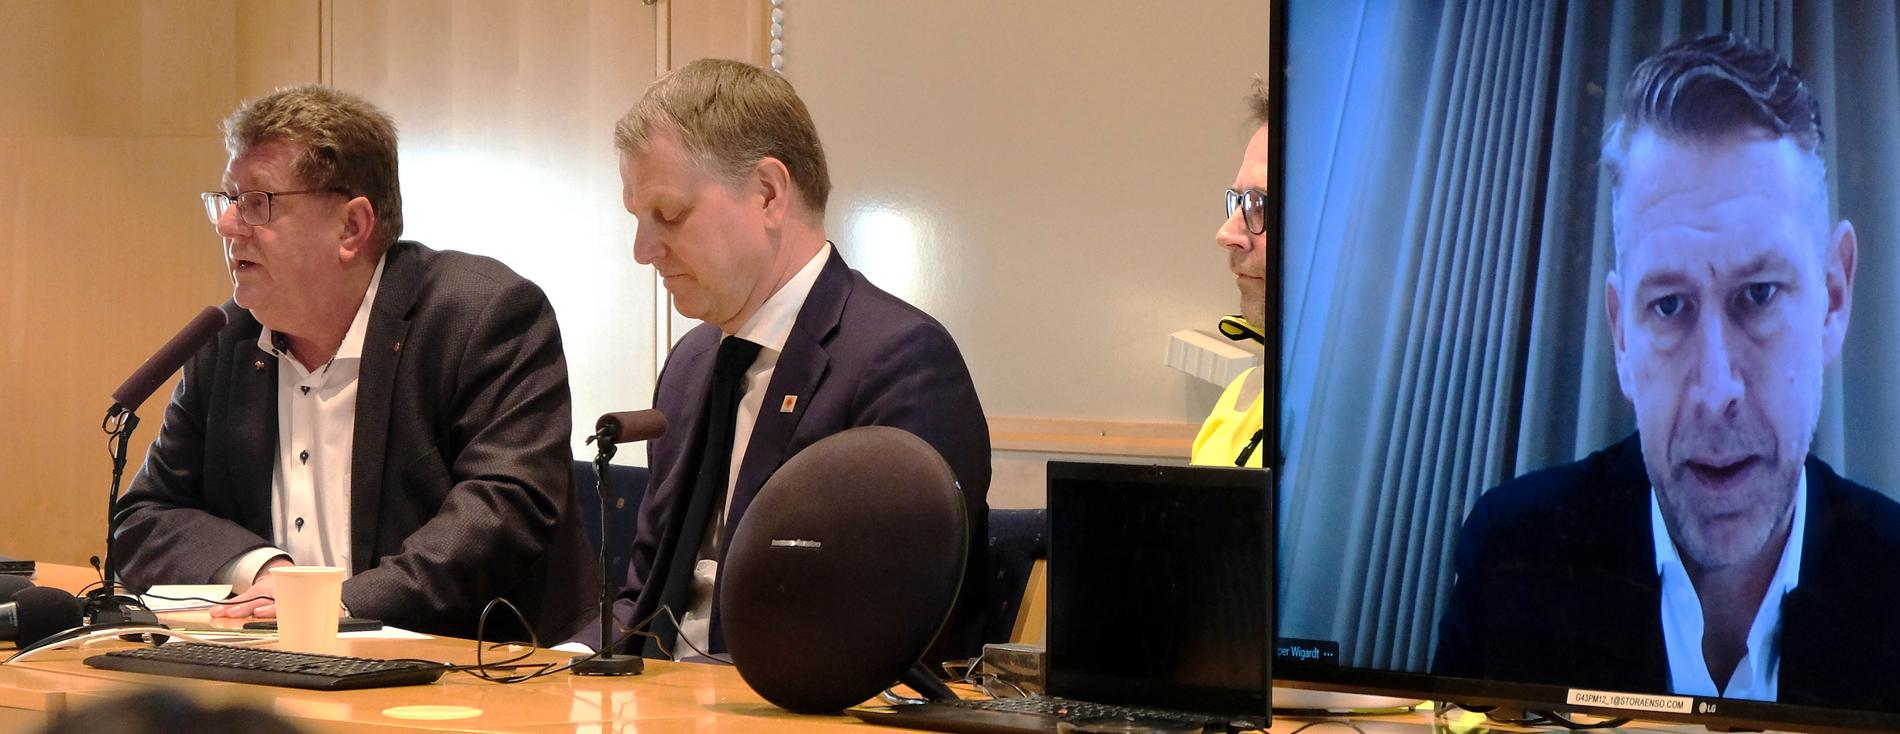 Borlänges kommunalråd Jan Bohman tillsammans med Stora Ensos sverigechef Per Lyrvall och, på skärmen, Northvolts vd  Peter Carlsson.